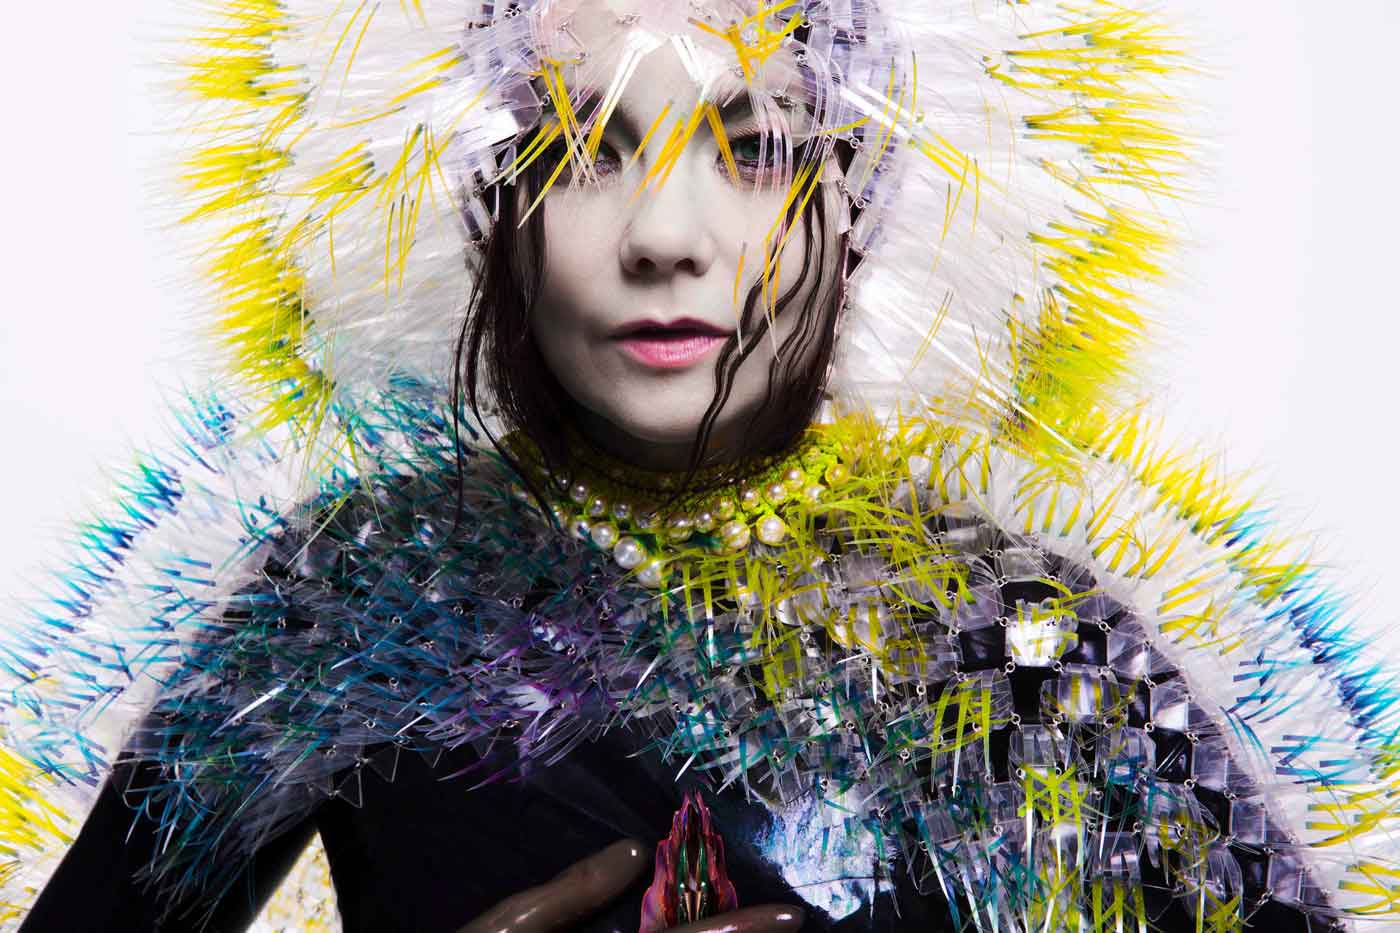 El nuevo disco de Björk con Arca será "el paraíso"